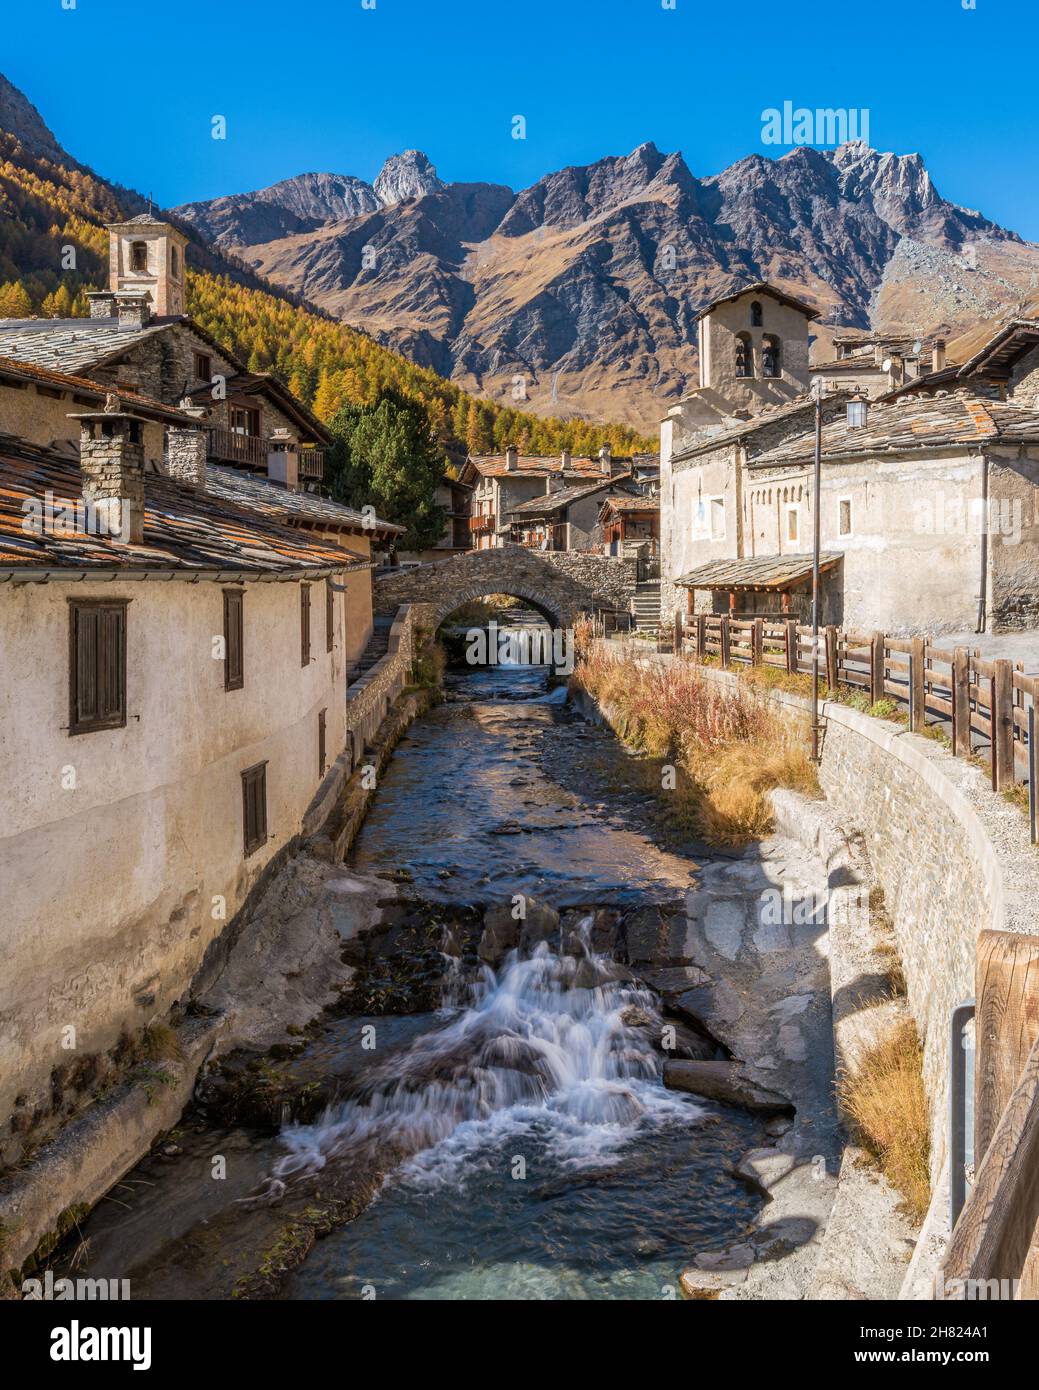 Das malerische Dorf Chianale während der Herbstsaison, im Varaita-Tal, Piemont, Norditalien. Stockfoto